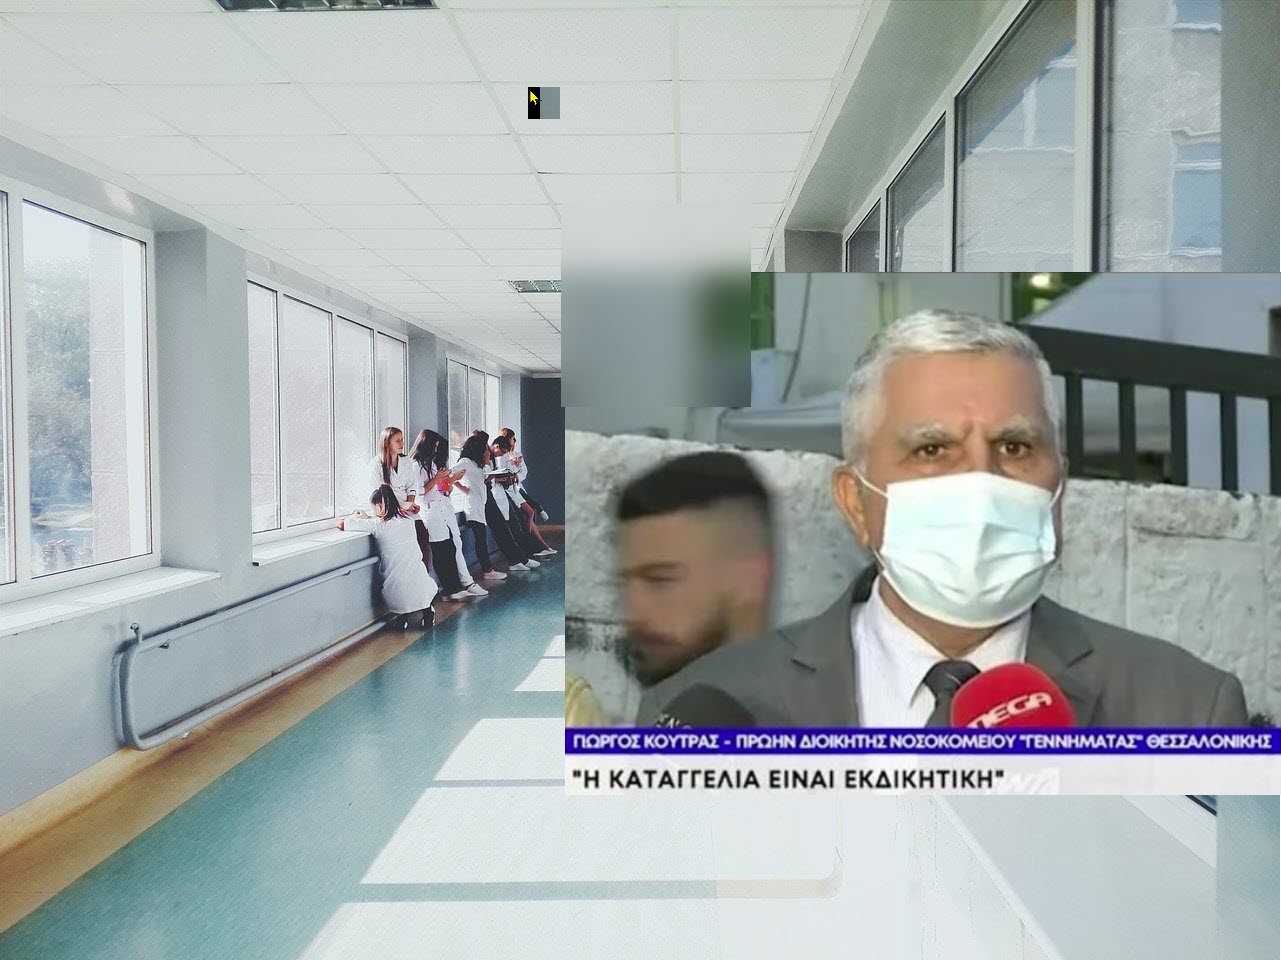 Θεσσαλονίκη: Παραιτήθηκε ο διοικητής νοσοκομείου "Γ. Γεννηματάς" που καταγγέλθηκε για σεξουαλική παρενόχληση - Τι απαντά ο ίδιος